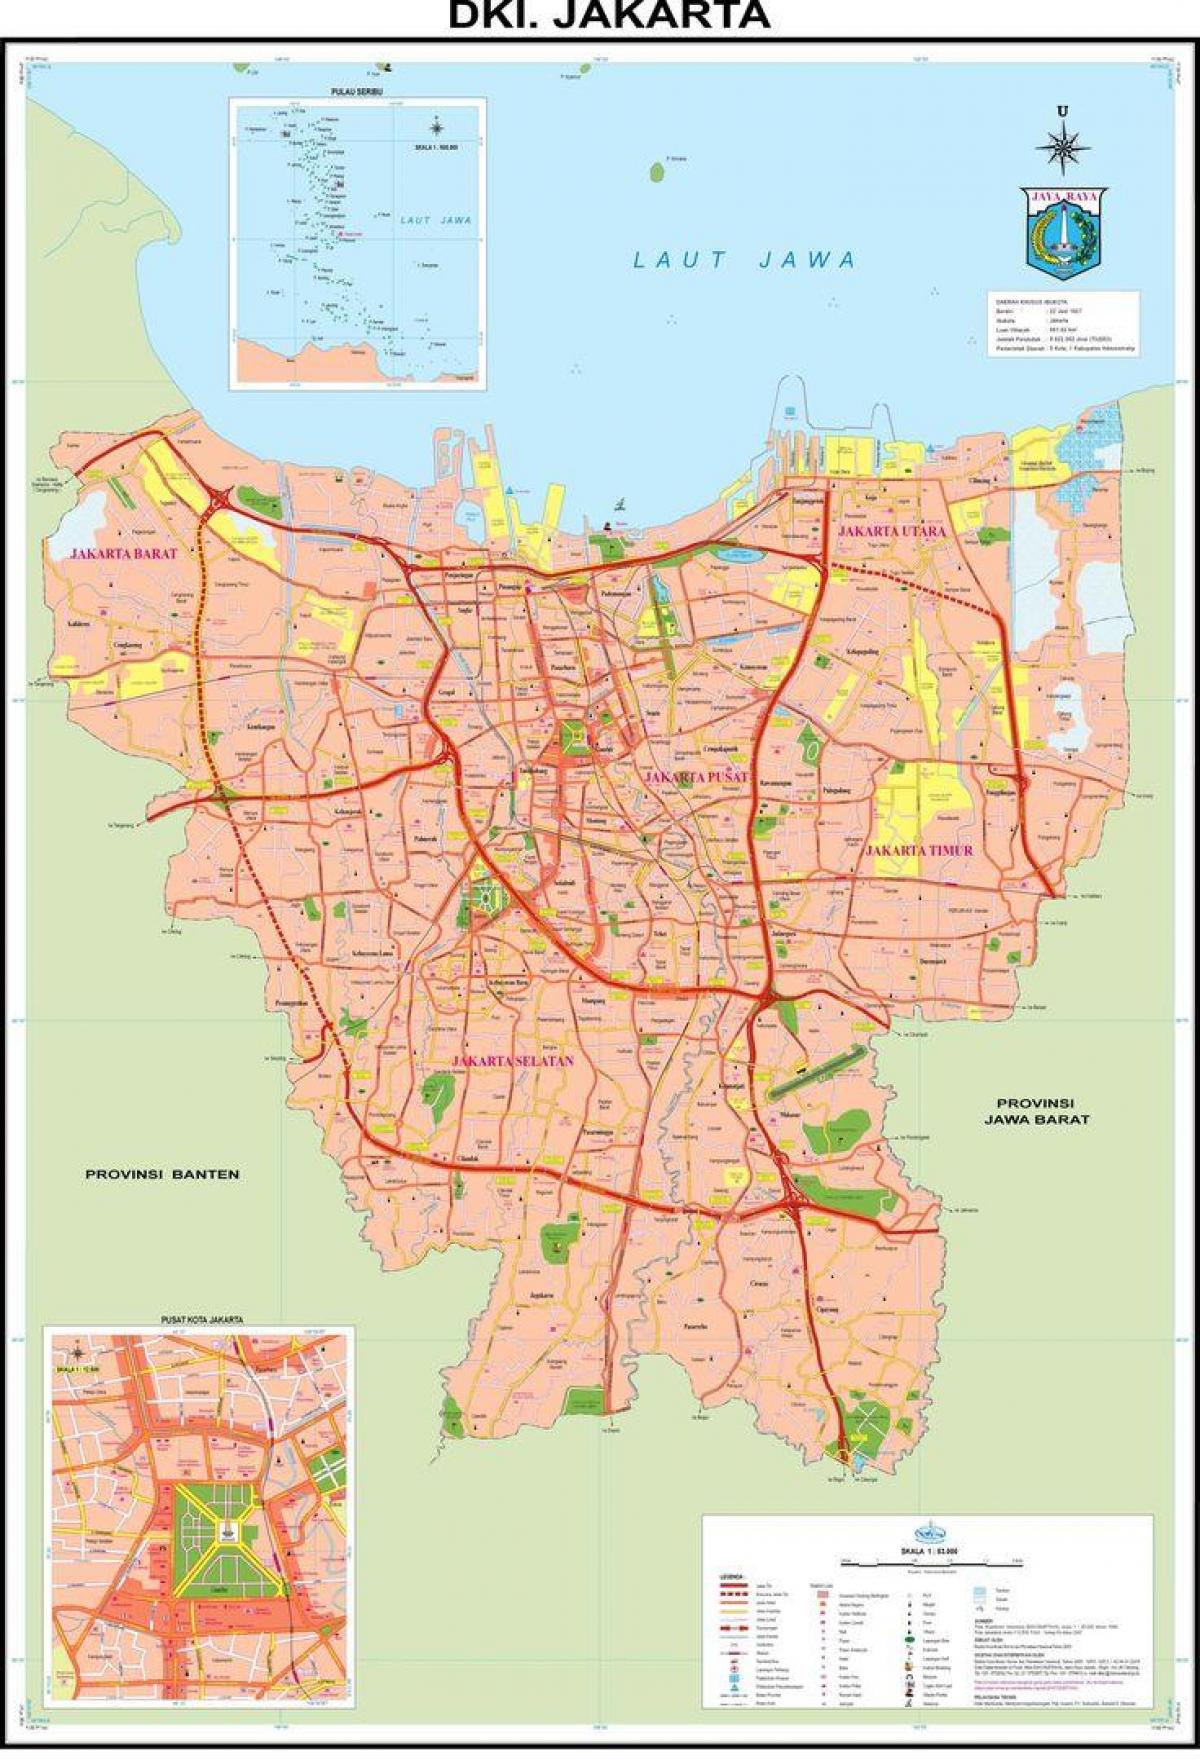 kort over Jakarta gamle bydel